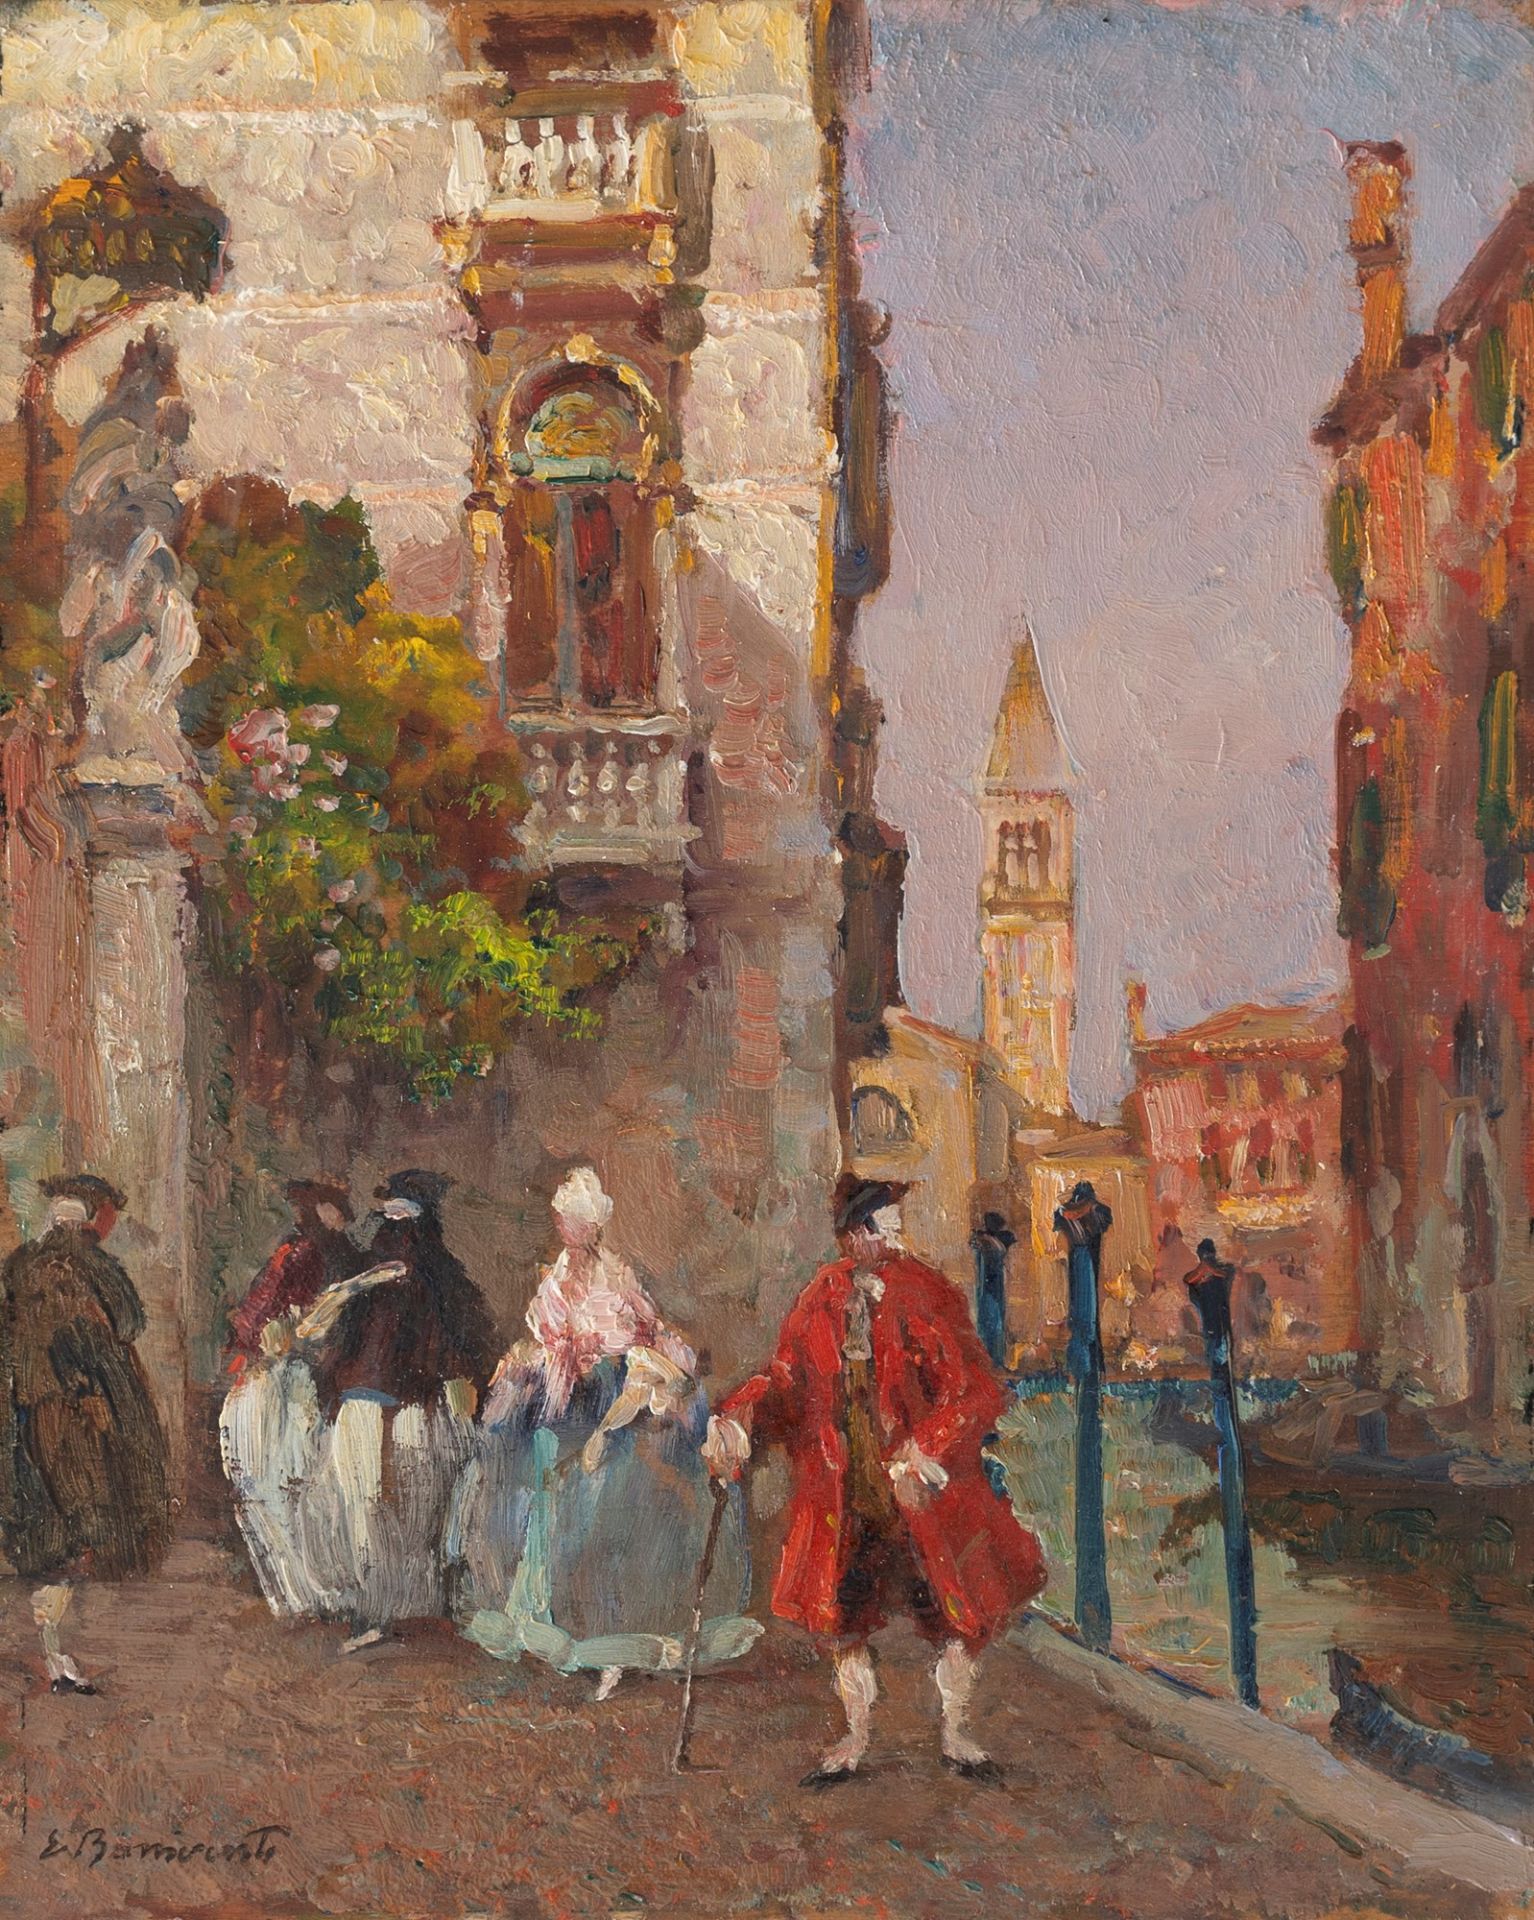 Eugenio Bonivento (Chioggia 1880-Milano 1956) - Venice, Palazzo Rezzonico